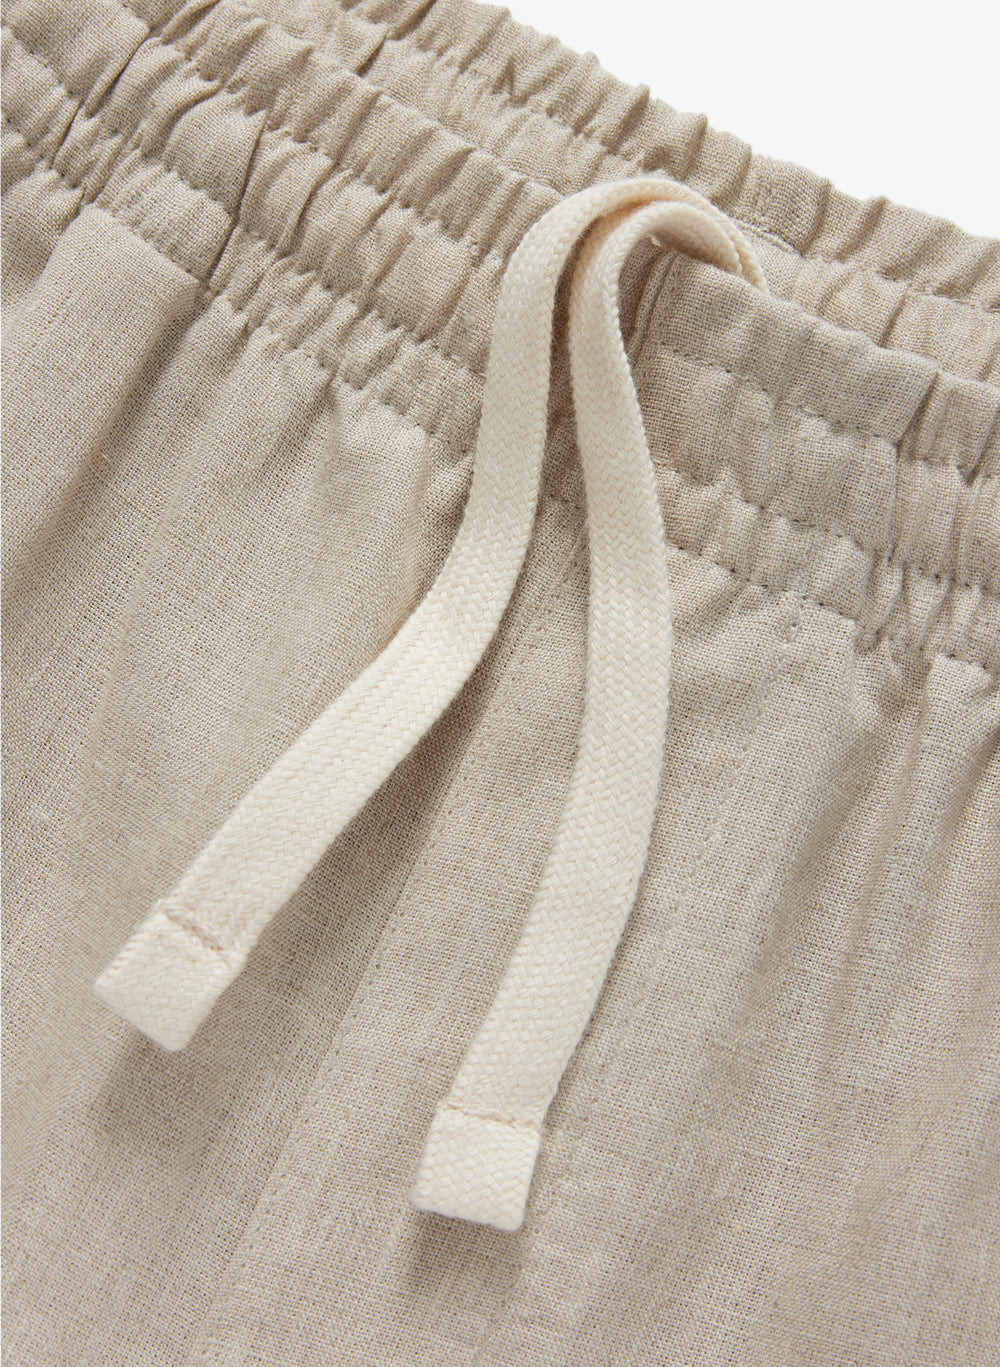 Weekend Shorts - Linen